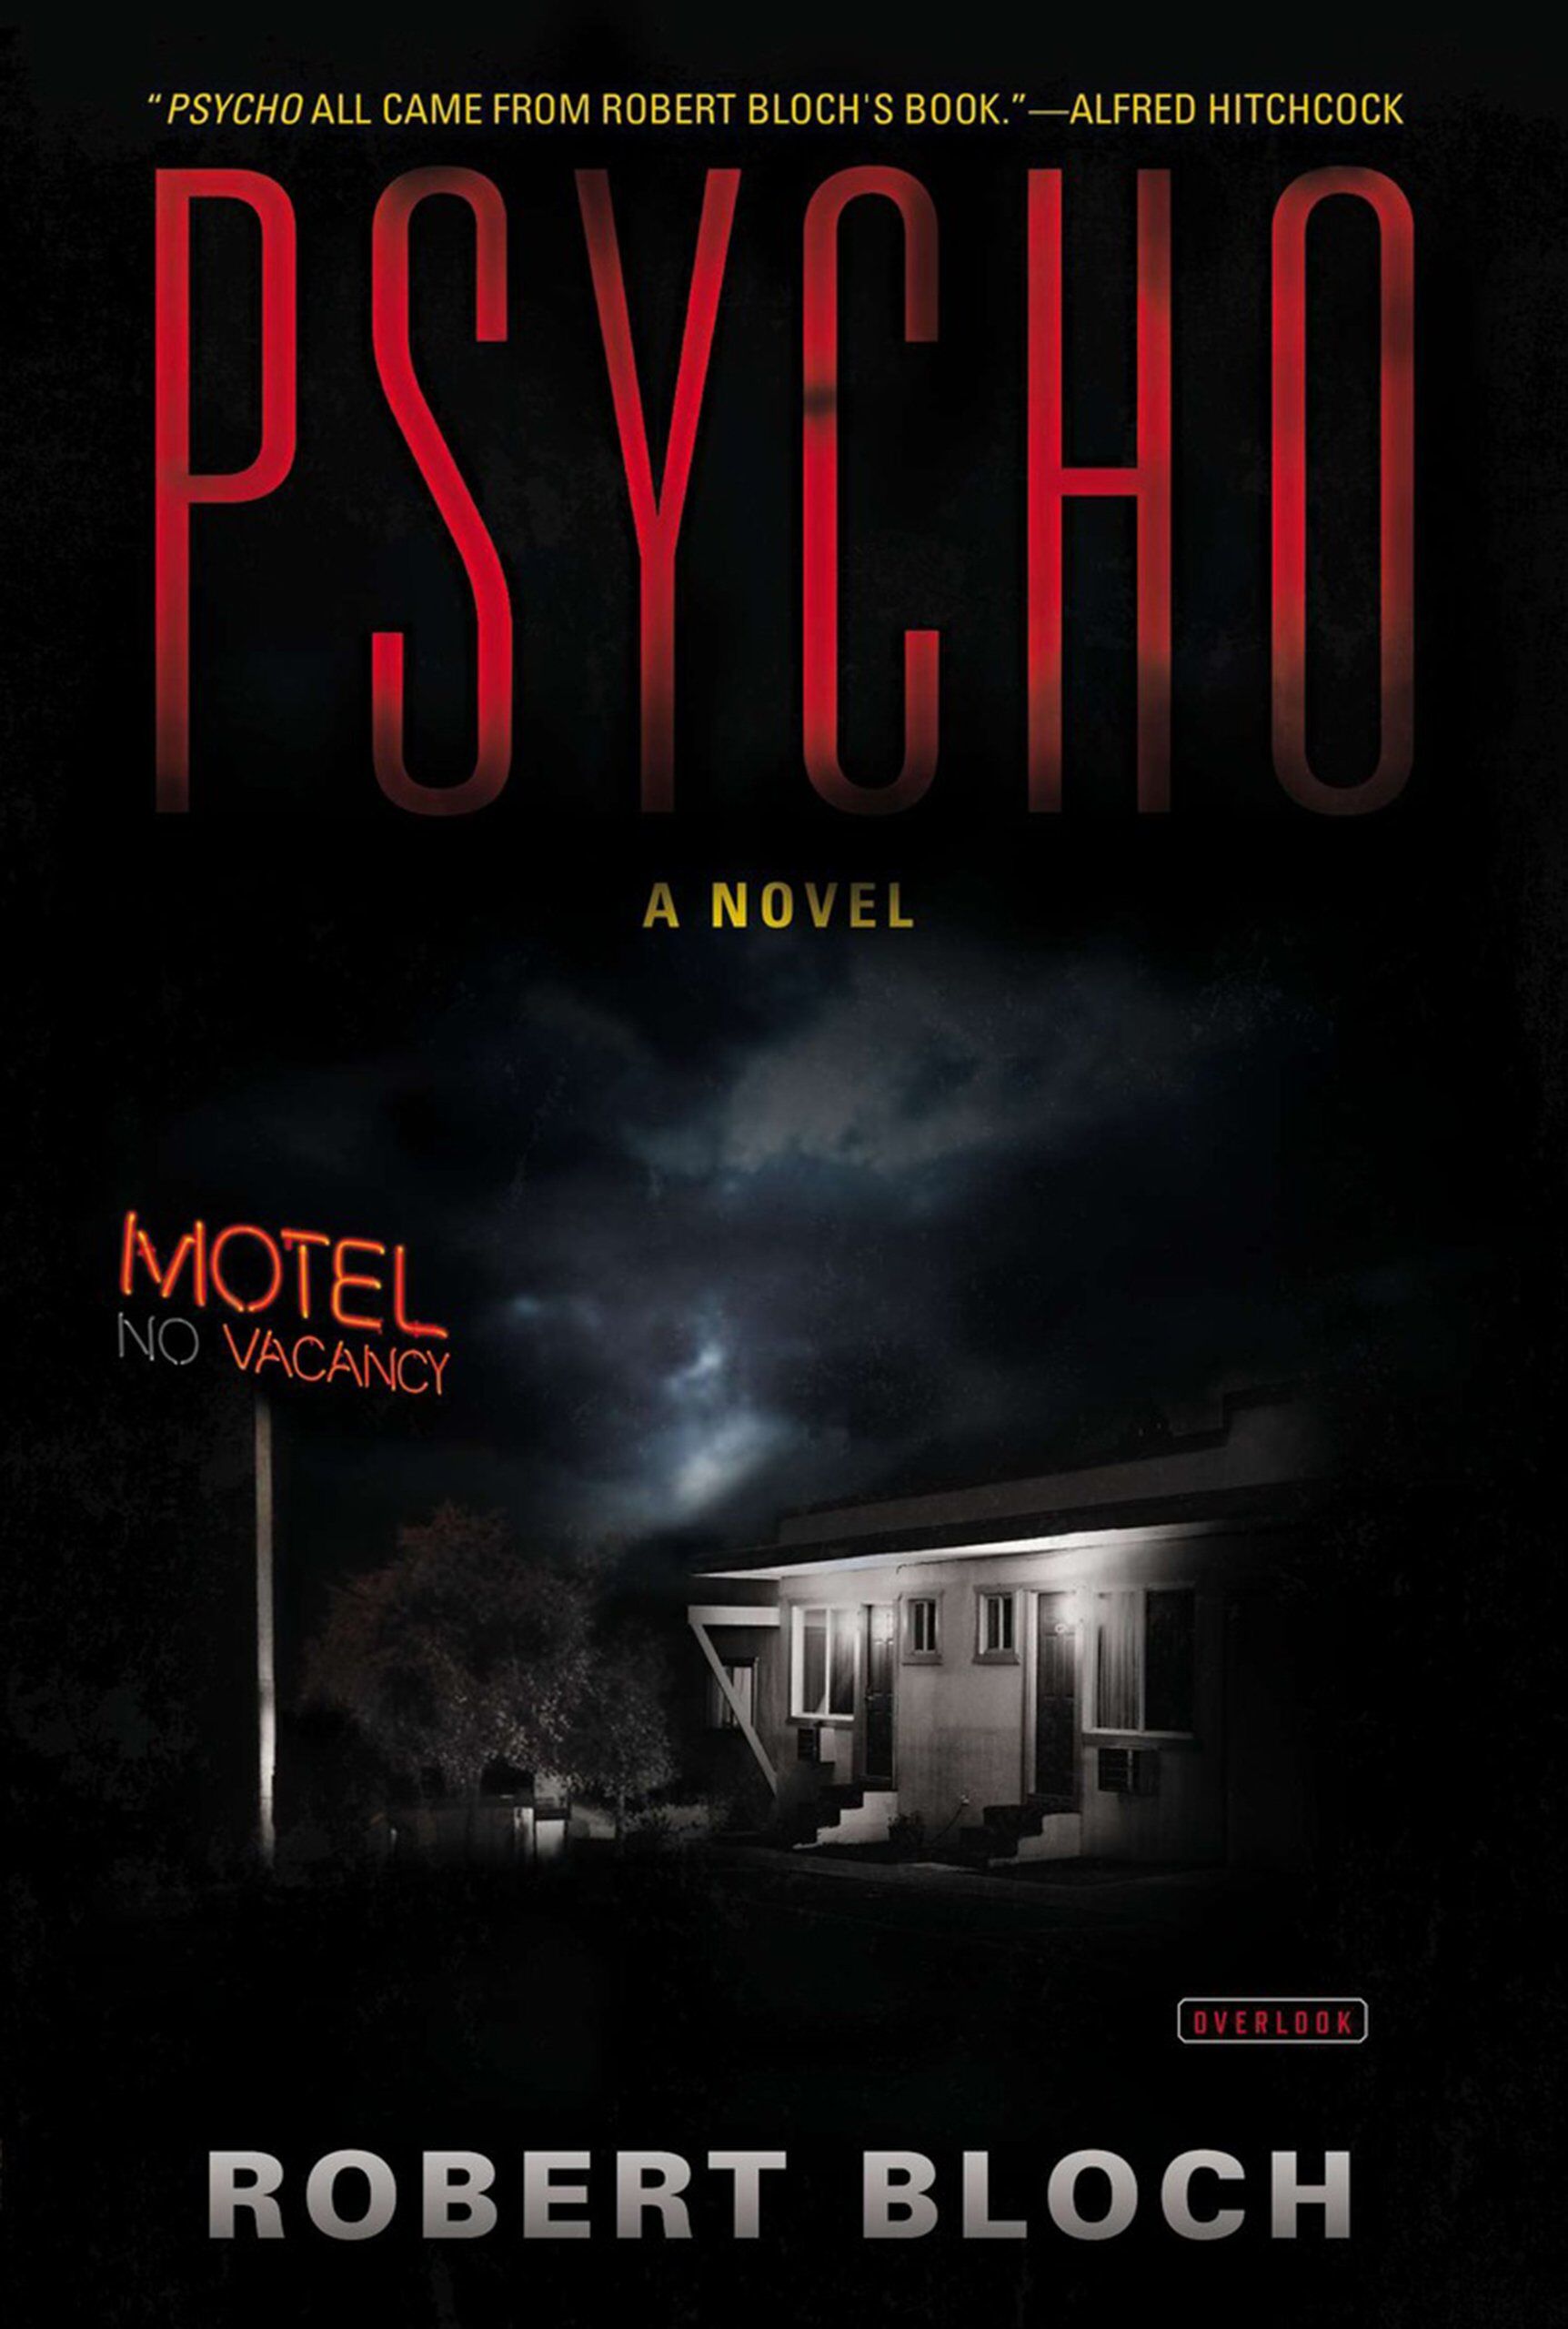 Psycho (1959) by Robert Bloch